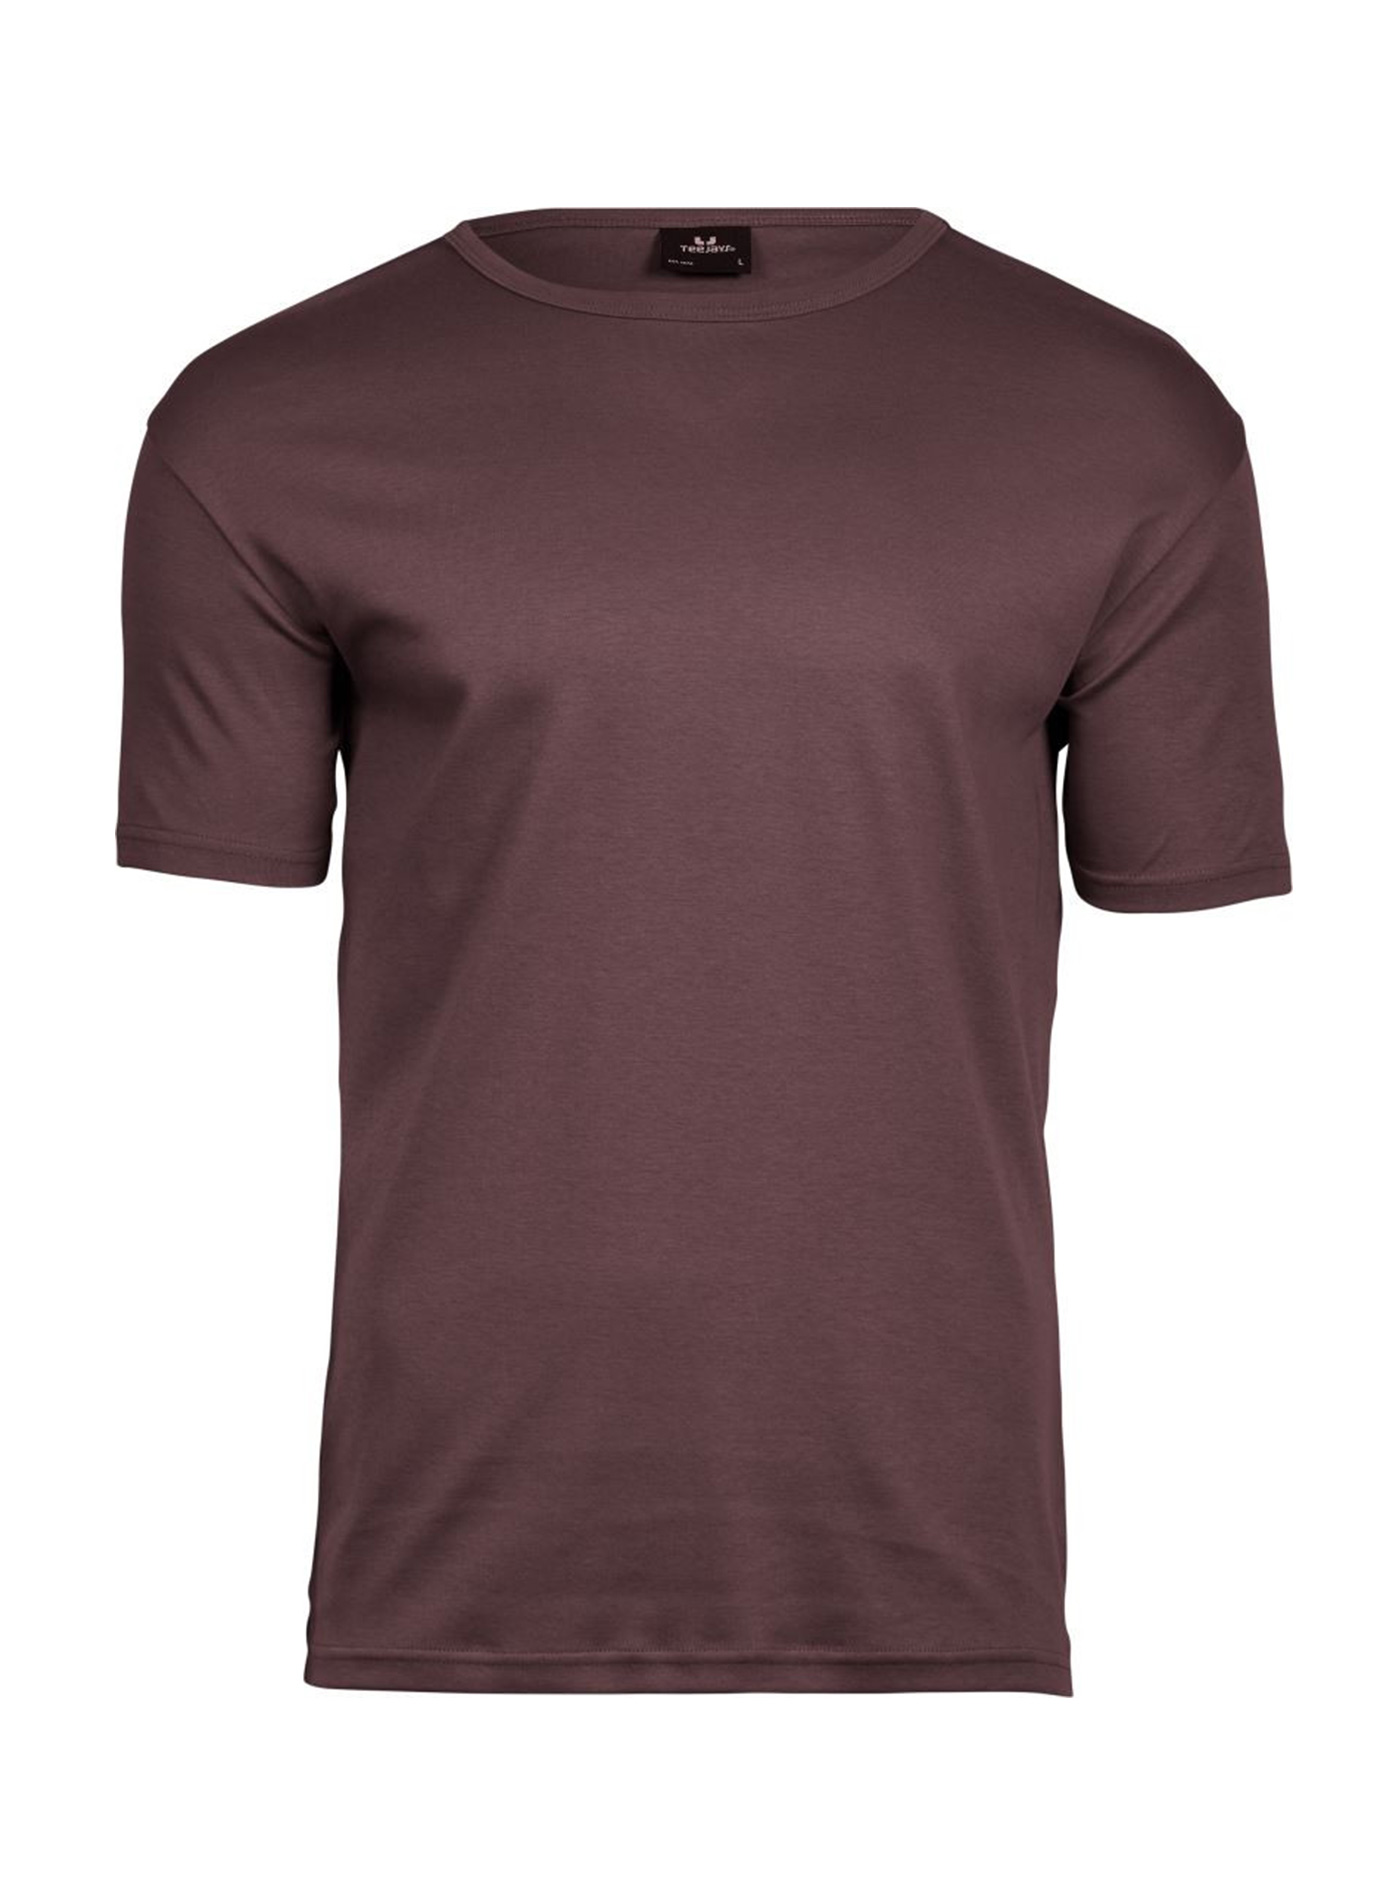 Silné bavlněné tričko Tee Jays Interlock - Hnědočervená XL